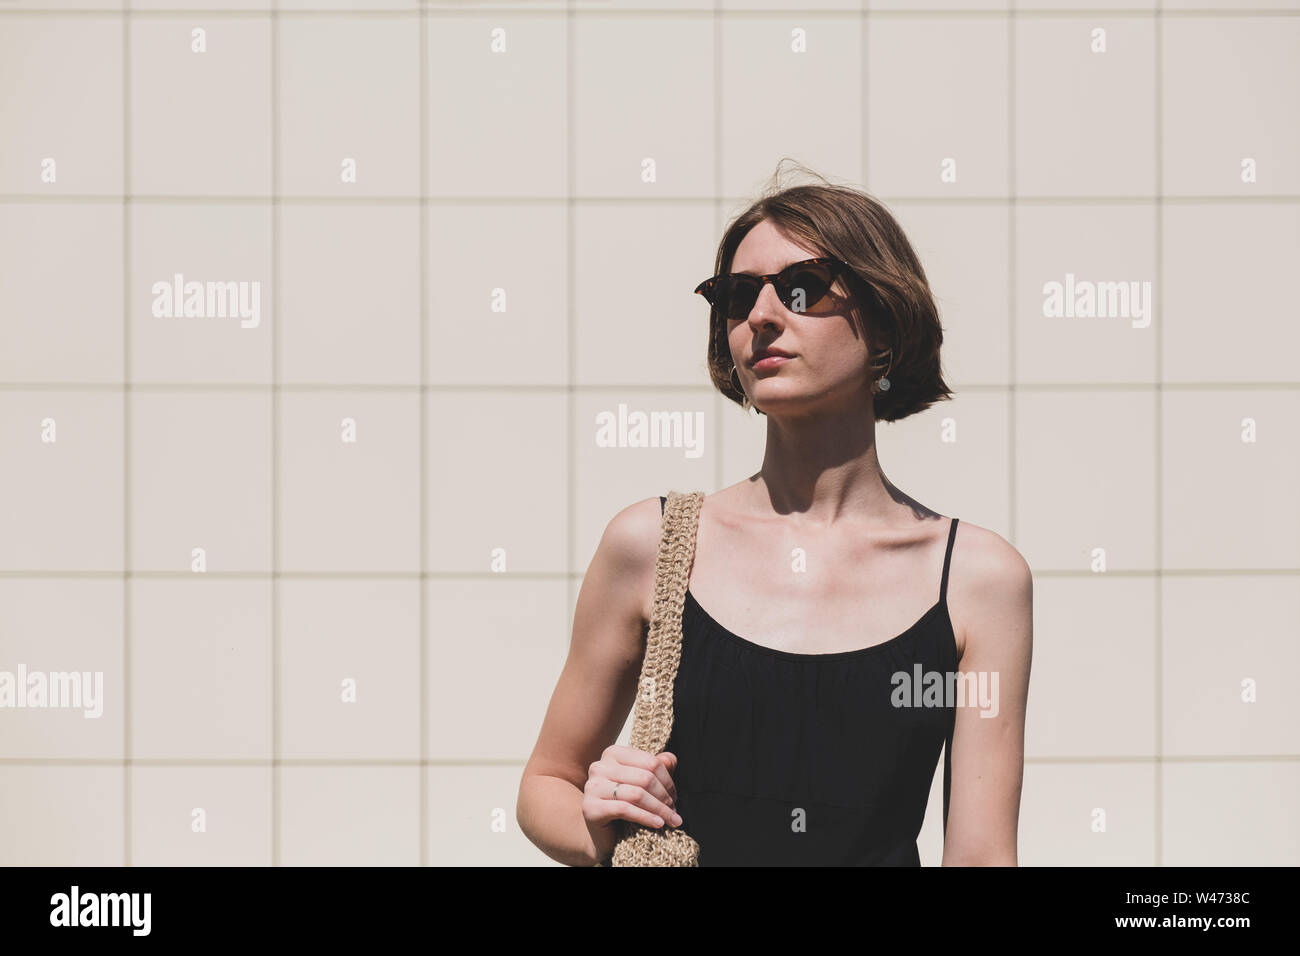 Junge selbstbewusste Frau portrait. Weibliche Person in einfachen schwarzen Kleid in minimalistisch im städtischen Hintergrund Stockfoto